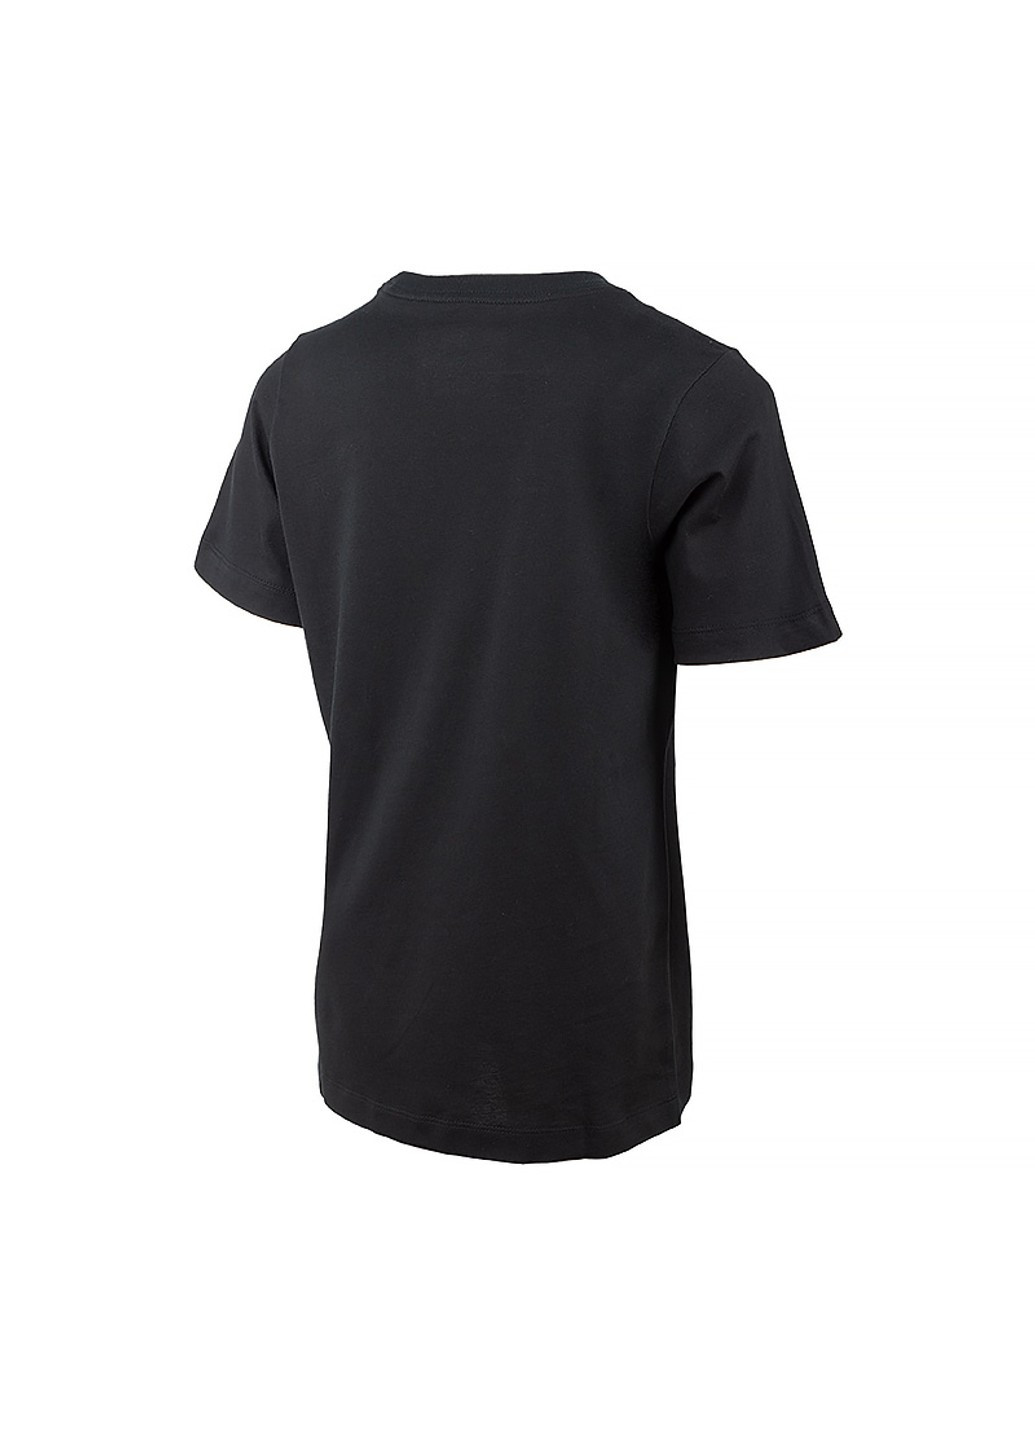 Чорна демісезонна футболка b nsw tee create pack 2 Nike